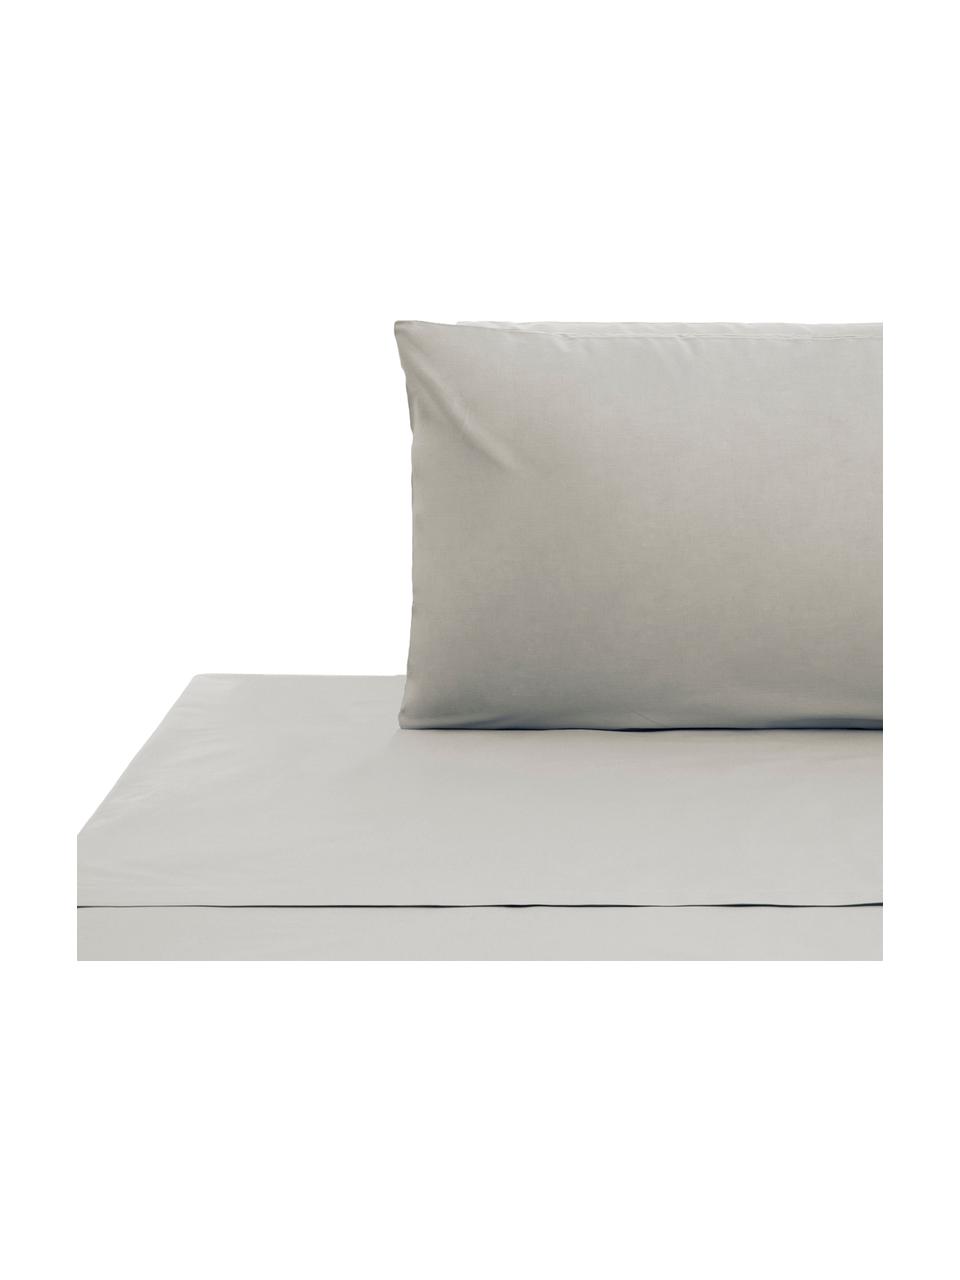 Set biancheria da letto con lenzuolo in cotone grigio chiaro Lenare, Fronte e retro: grigio chiaro, 150 x 290 cm + 1 federa 50 x 80 cm